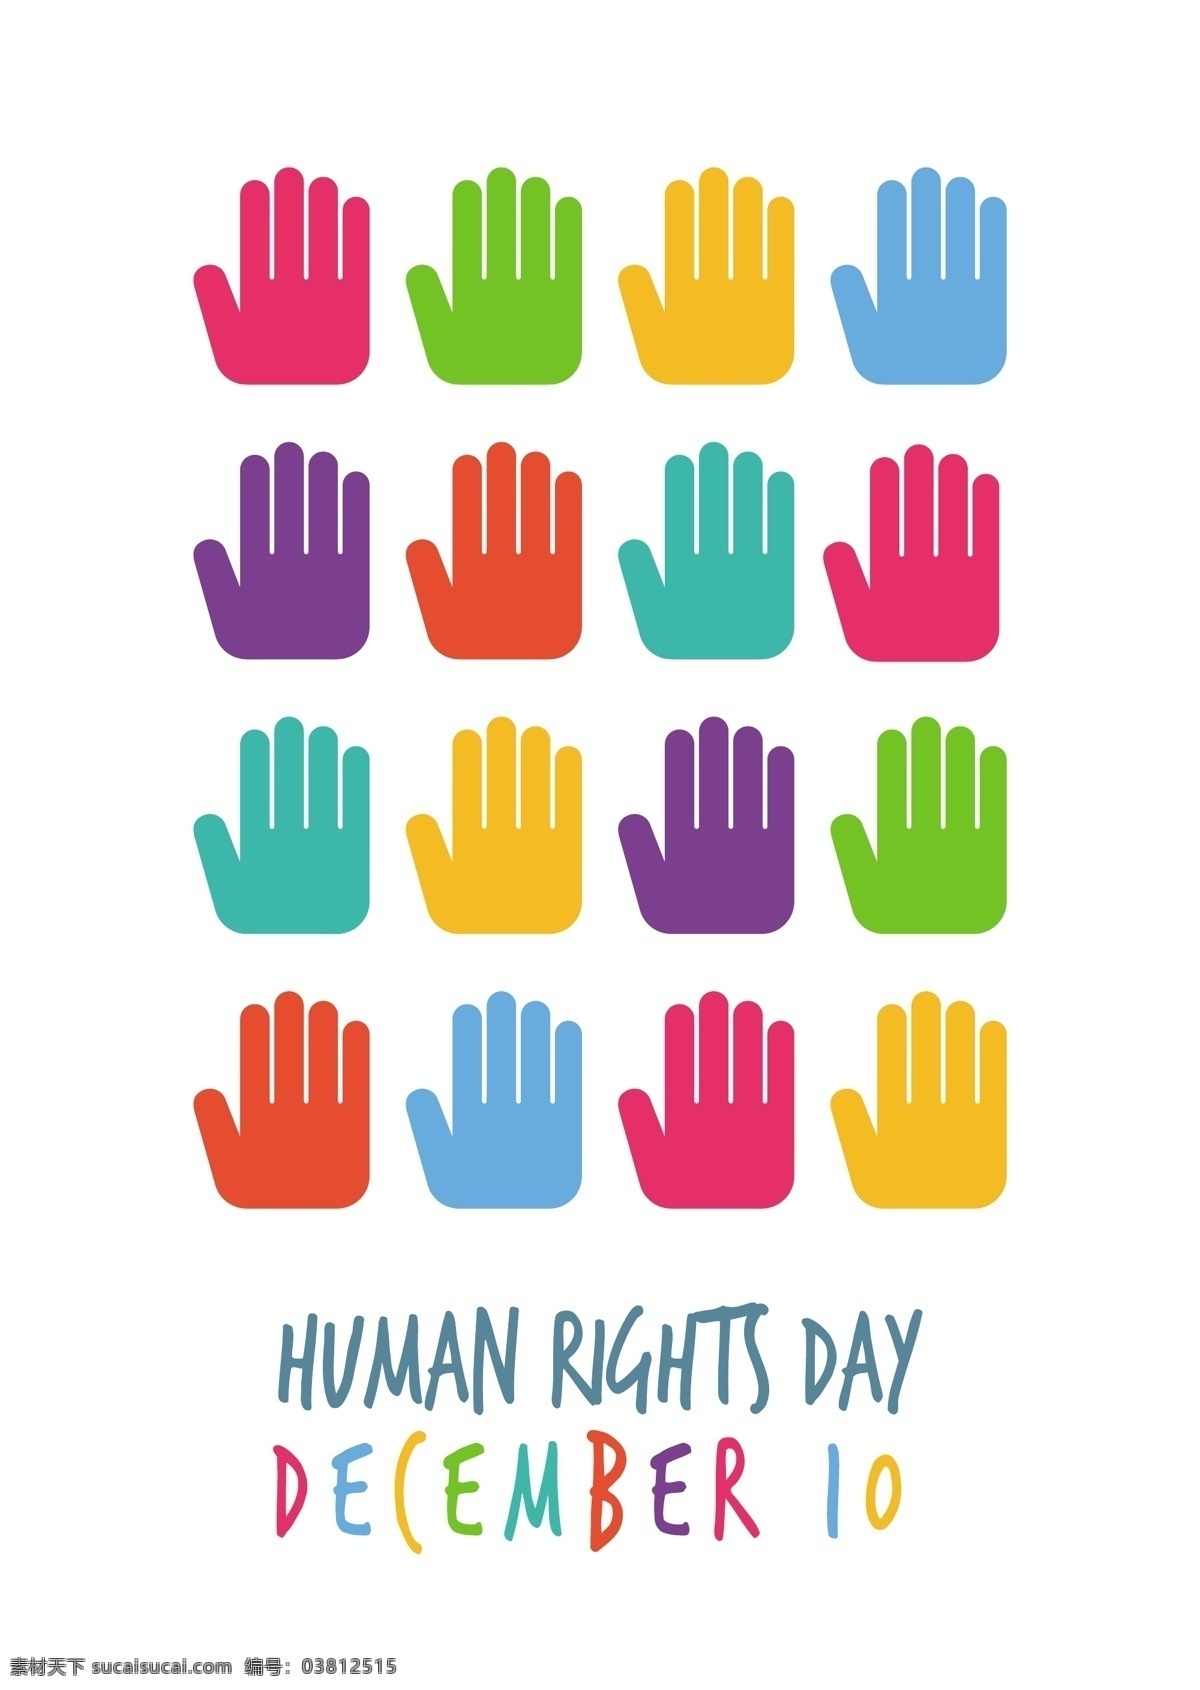 彩色 手 牌 为人 权 日 人 世界 和平 象征 自由 贺卡 问候 国际 天 有色 权利 人性 白色